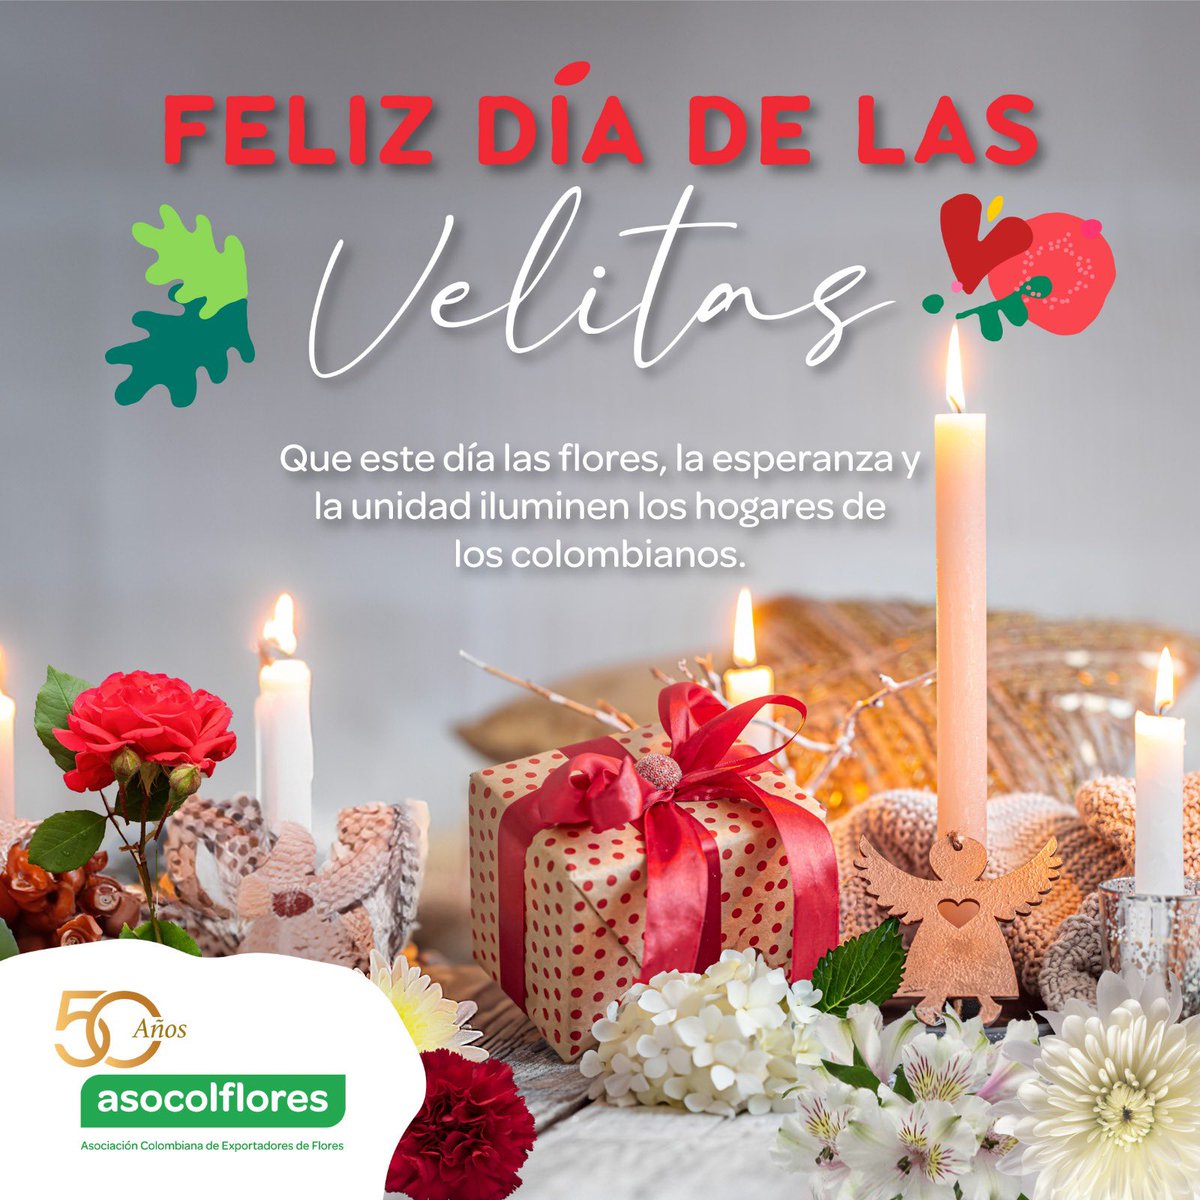 La magia de la Navidad comienza con la luz de las velitas y el colorido de nuestras #FloresdeColombia. ¡Que la luz de esta tradición ilumine nuestros hogares con alegría, amor y esperanza! 🕯️💐 #FelizDíaDeLasVelitas #FlowersOfColombia #Navidad #Asocolflores